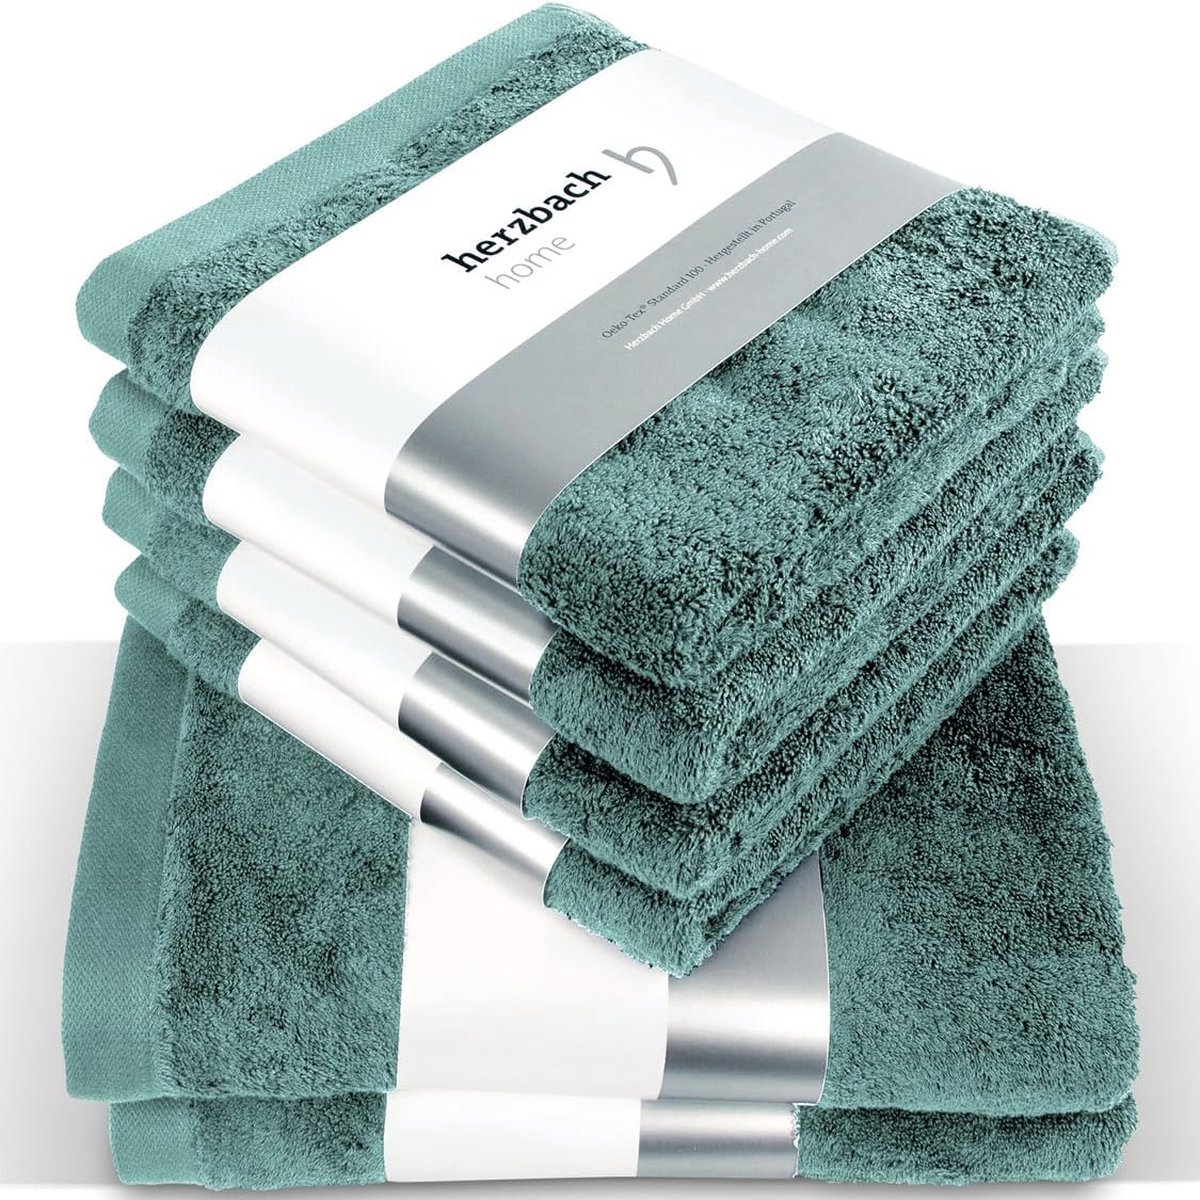 Premium handdoekenset 6-delig oceaangroen 4 handdoeken van 50 x 100 cm en 2 douchehanddoeken 70 x 140 cm hoogwaardige zachte en absorberende handdoeken van natuurlijk katoen